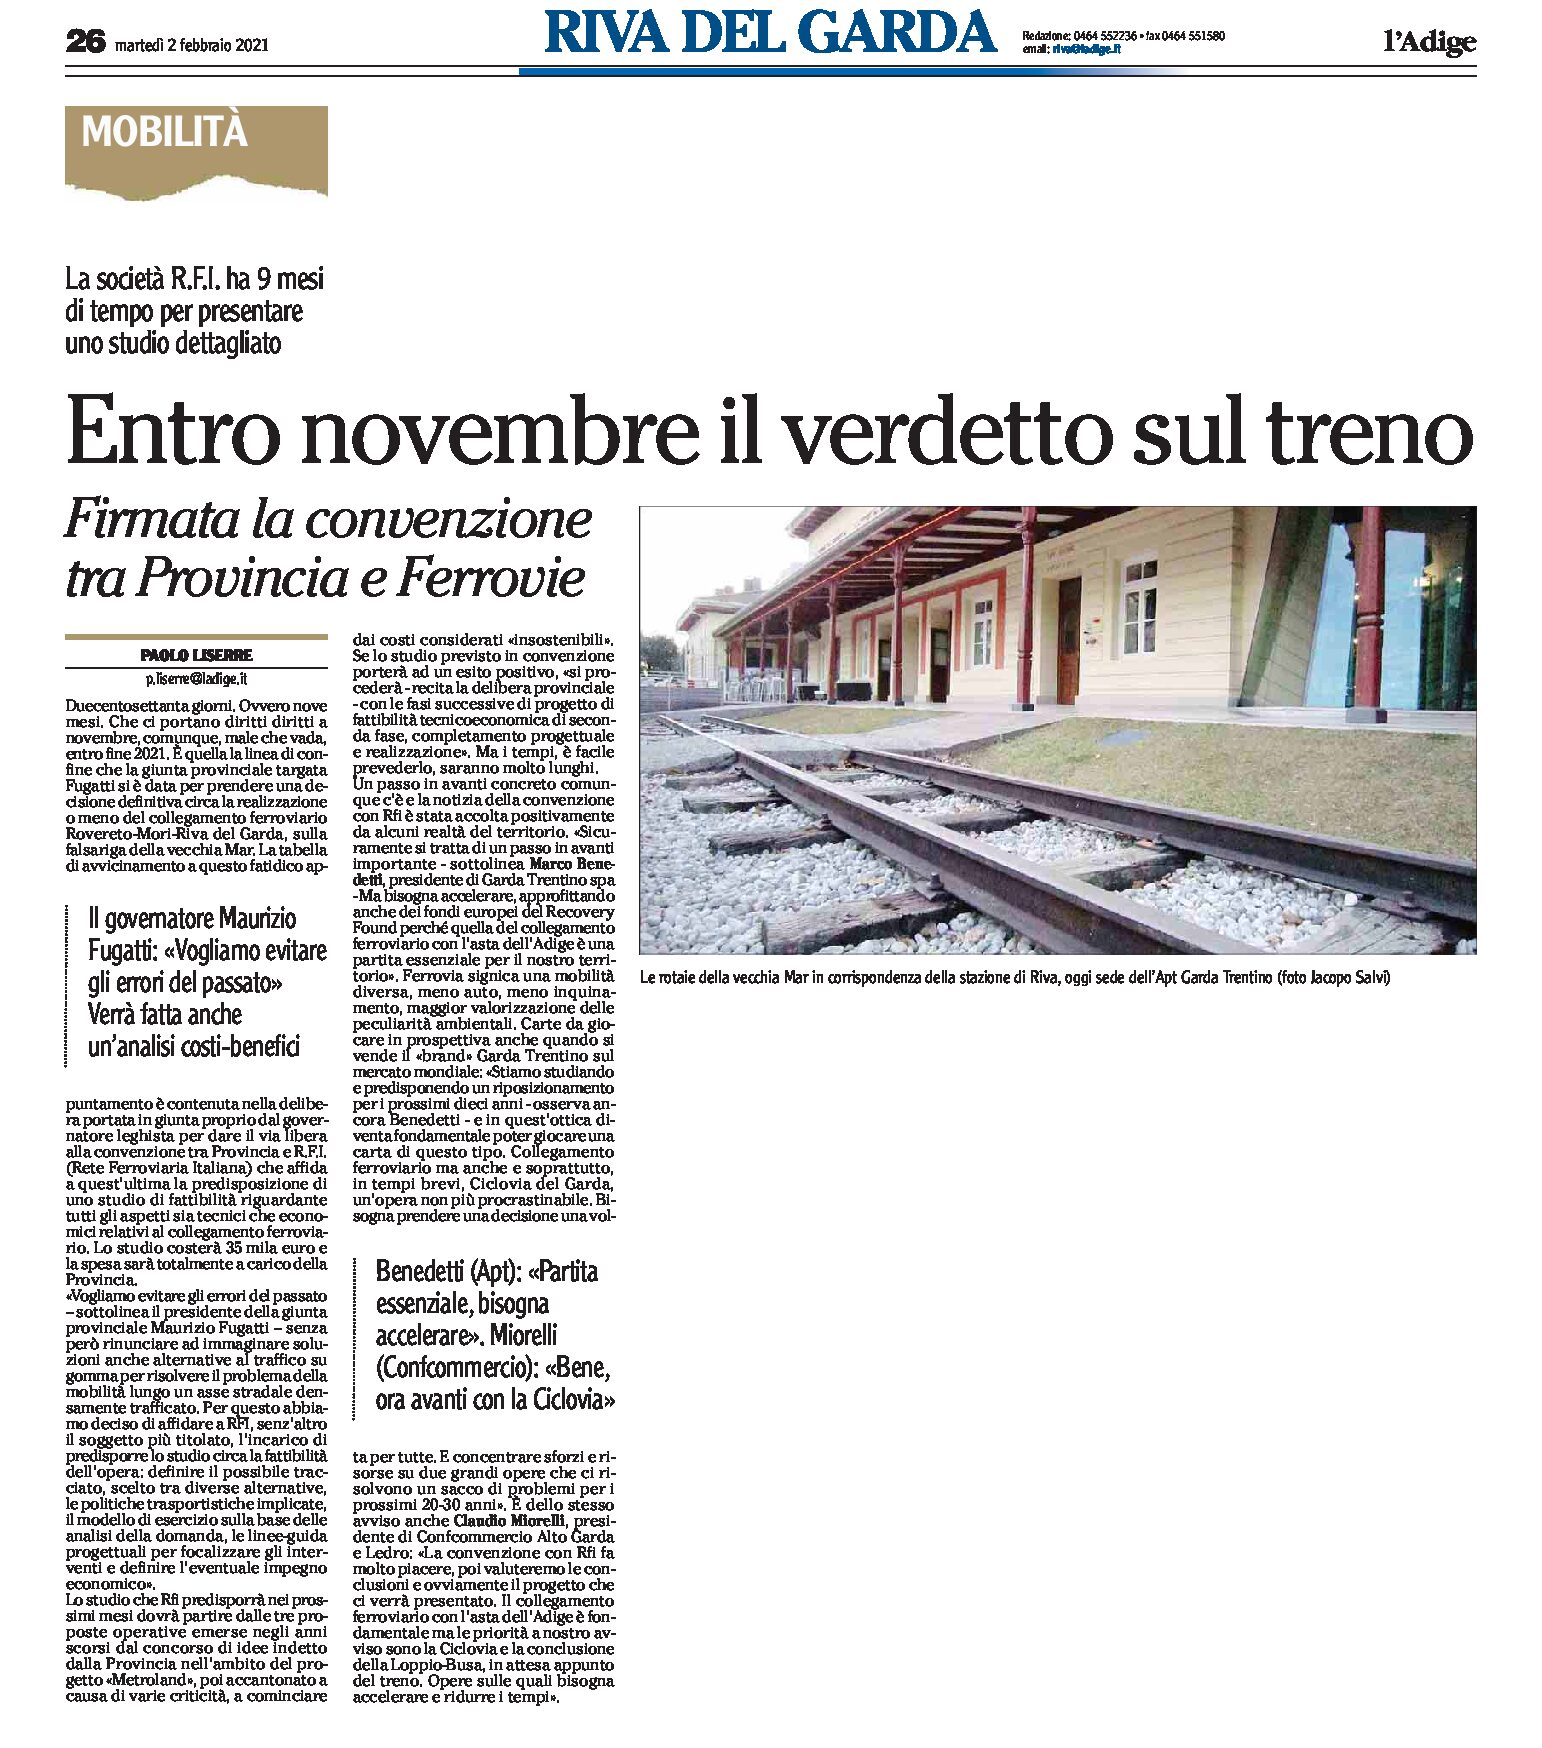 Rovereto-Riva: firmata convenzione tra Provincia e Ferrovie. 9 mesi di tempo per uno studio dettagliato sul collegamento ferroviario